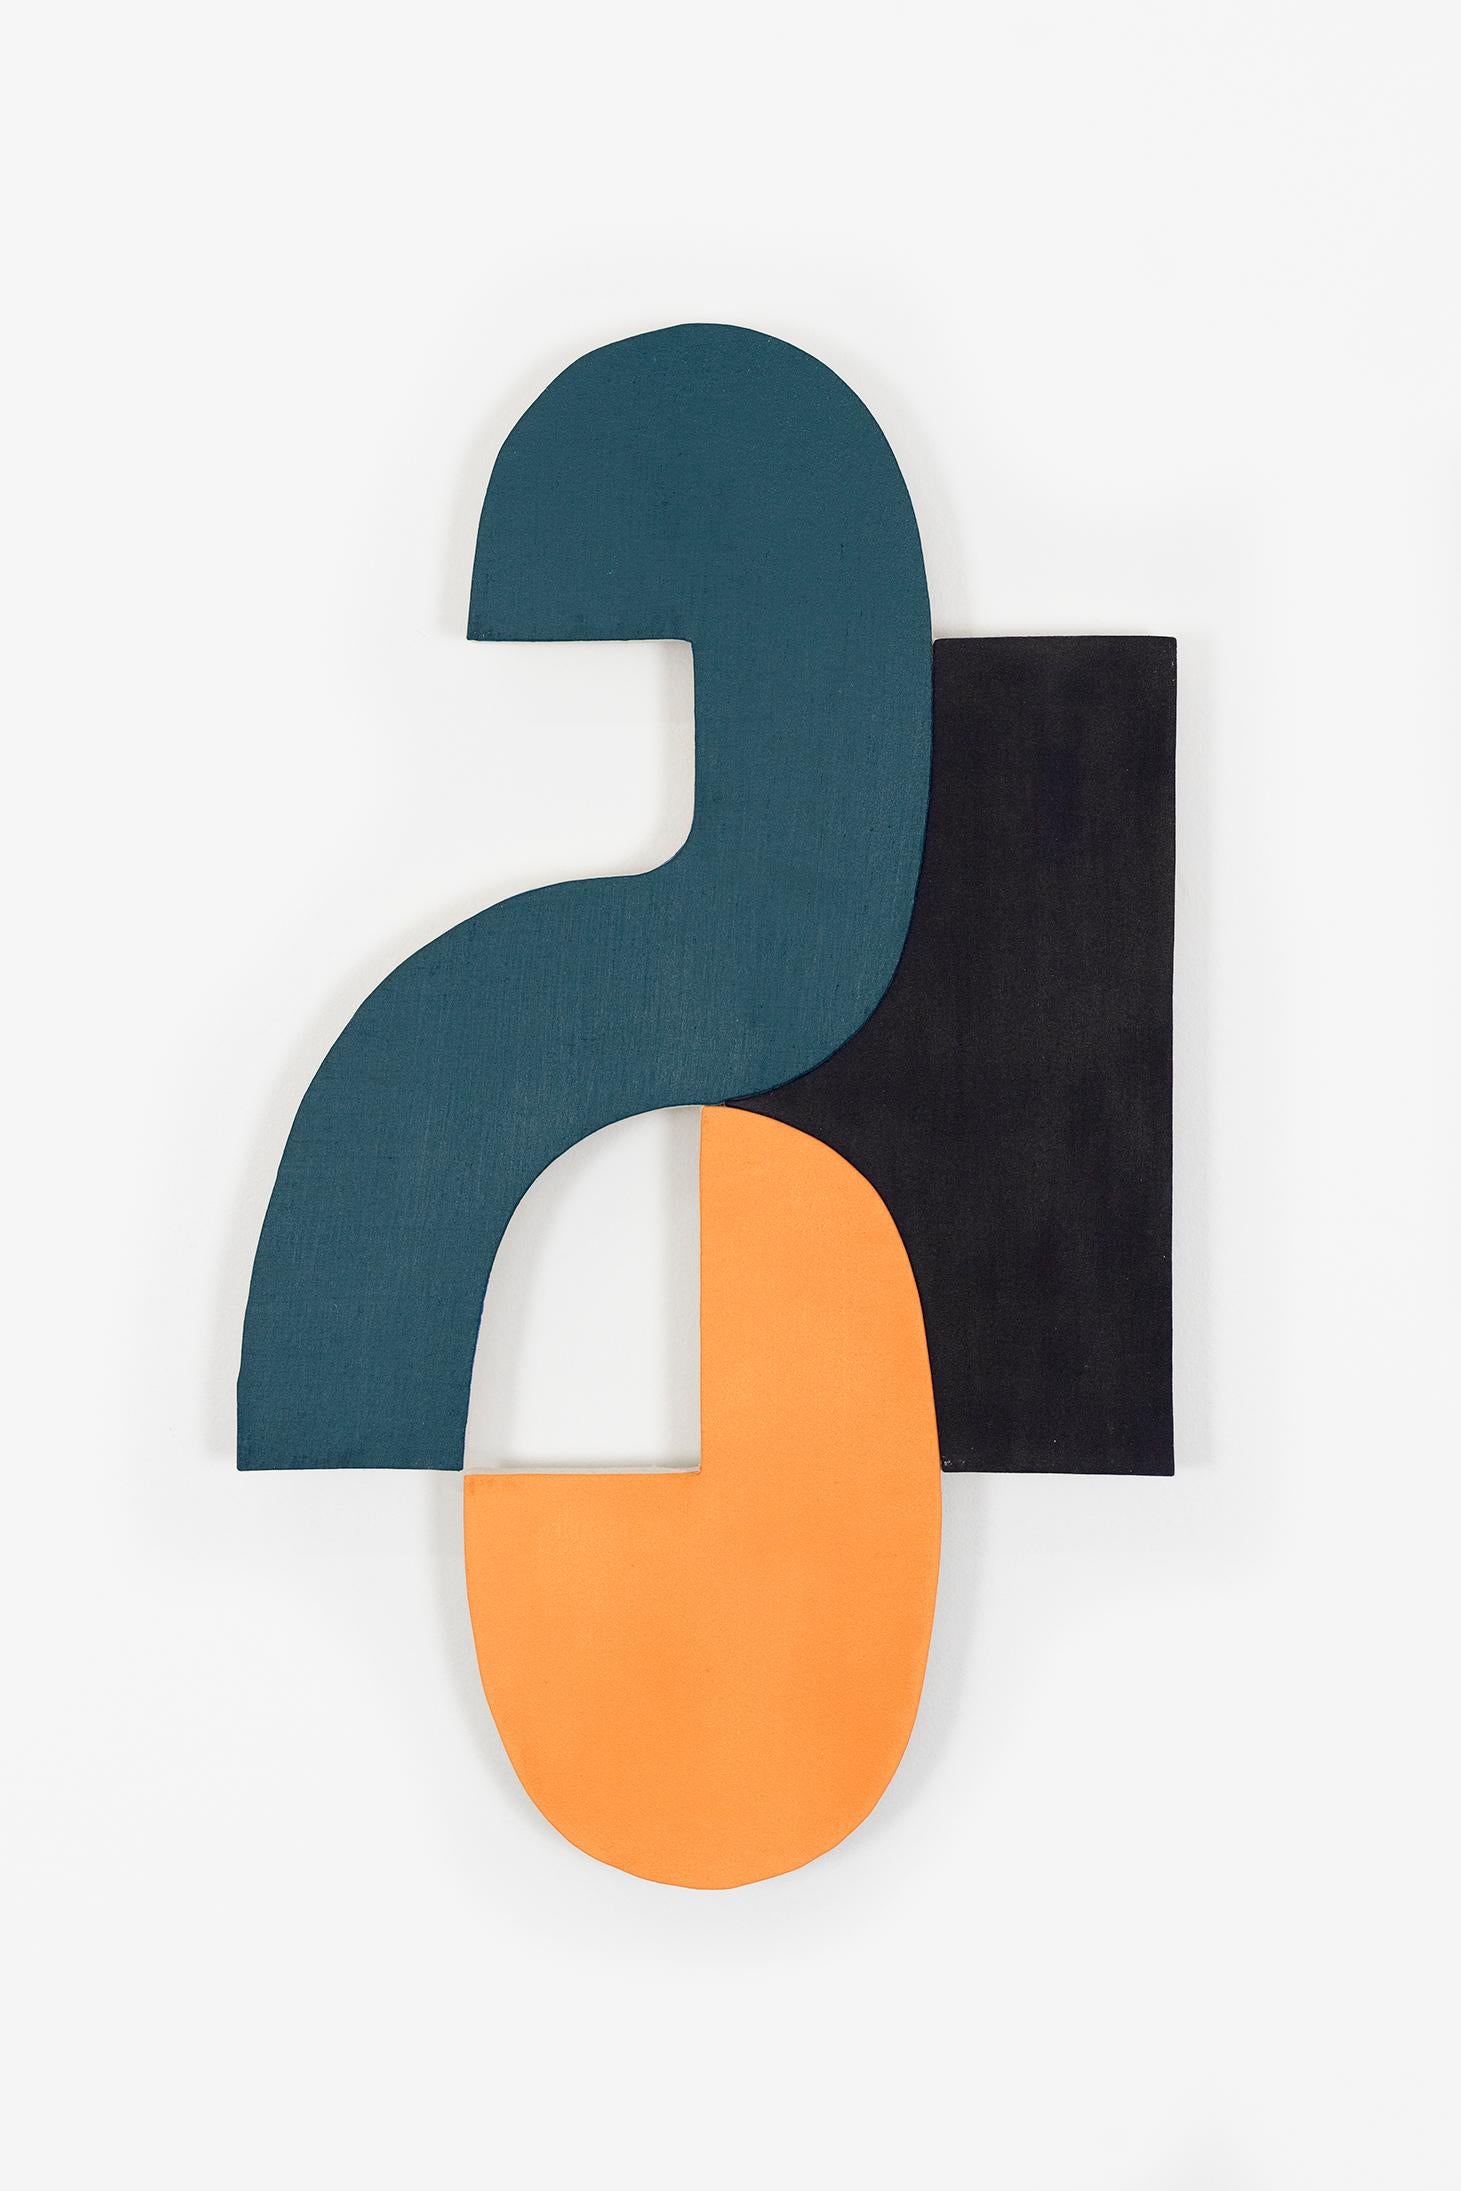 Abstract Painting Jason Matherly - Sculpture murale « 21-7 » orange, bleu marine, noir, géométrique, milieu du siècle dernier, mcm